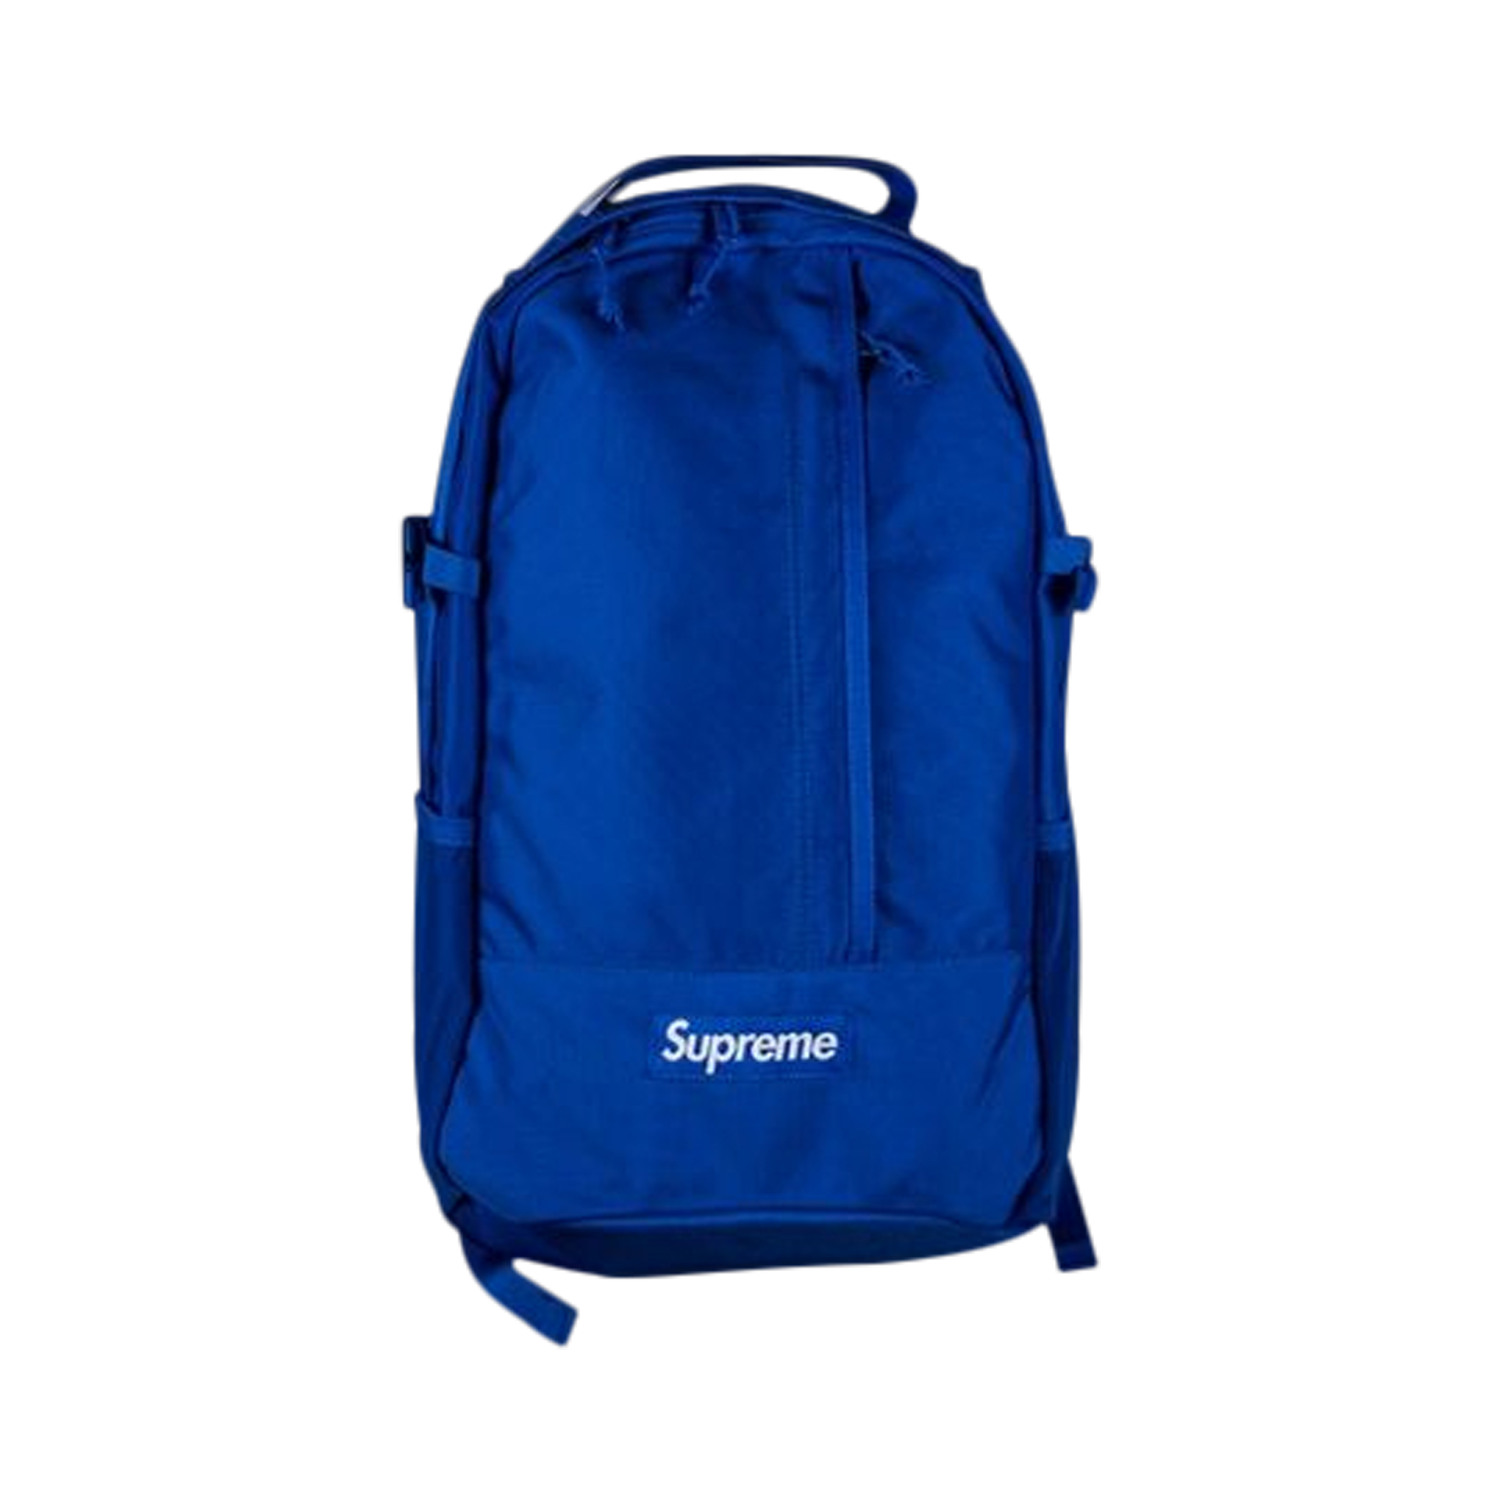 埼玉激安Supreme 2020ss Backpack Blue Camo バッグ